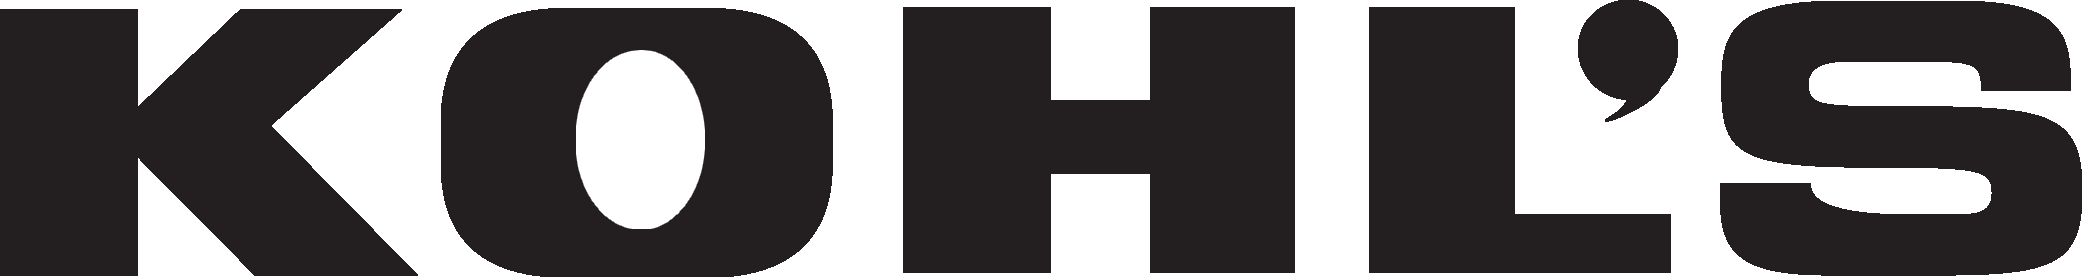 Kohls Logo png